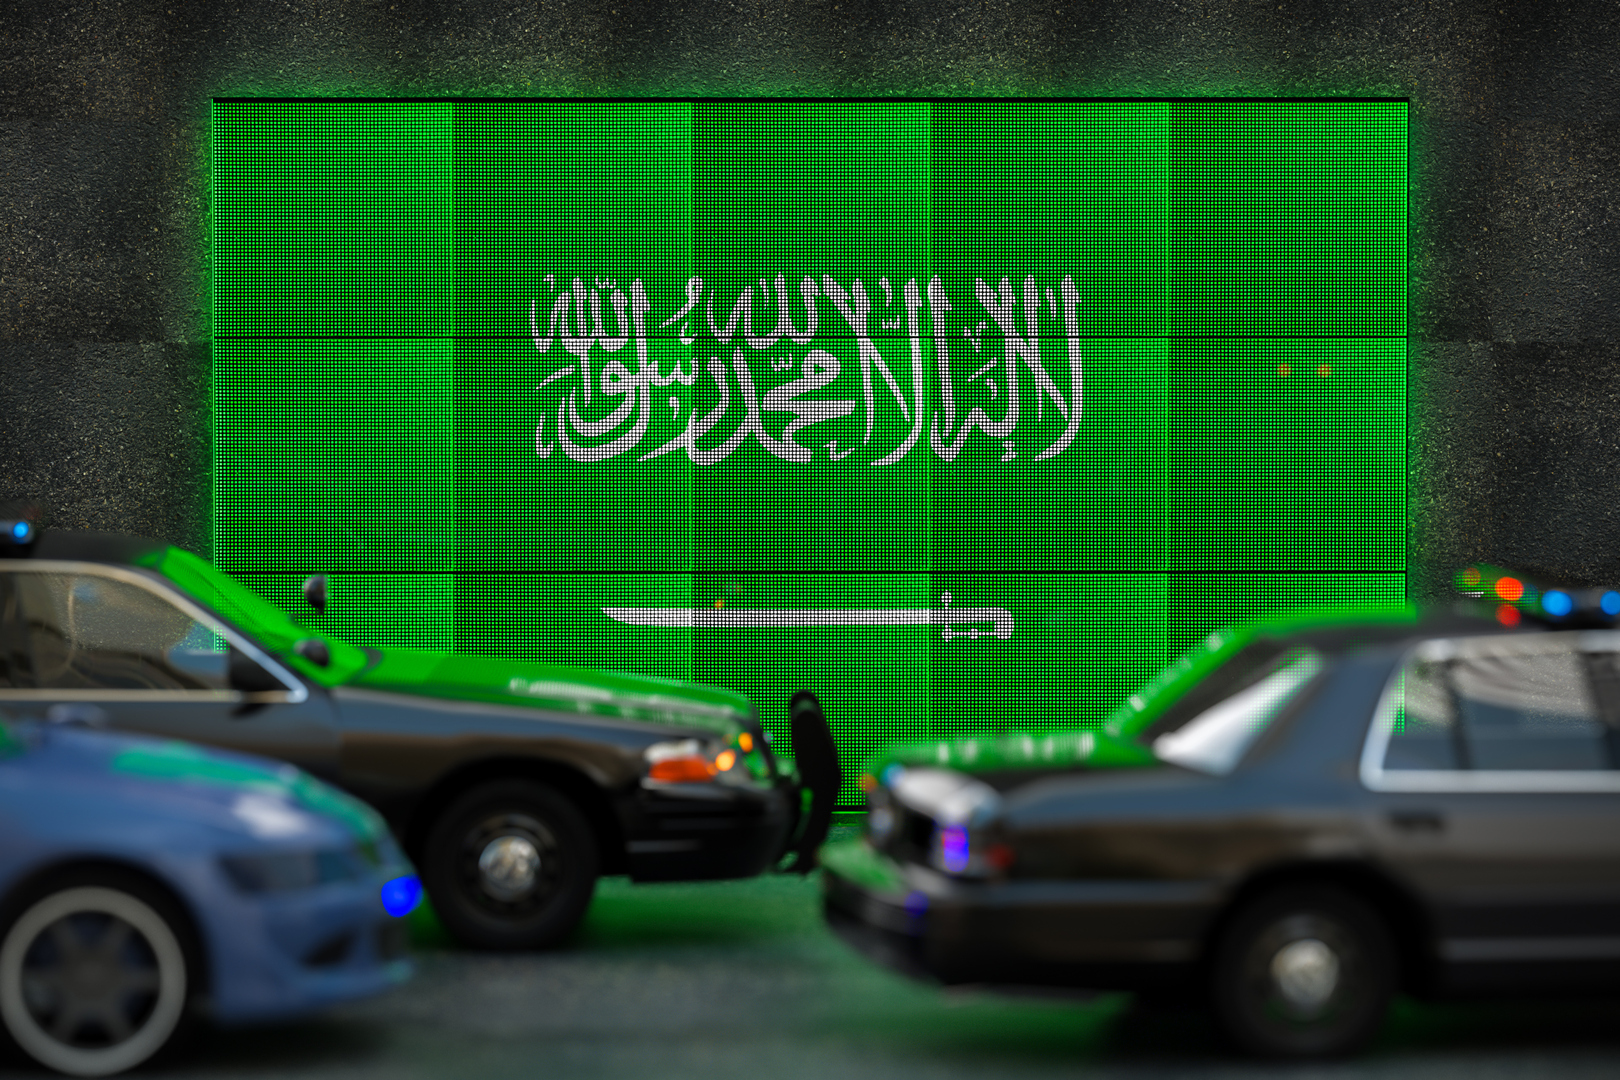 السعودية.. القبض على 7 أشخاص انتحلوا صفة رجال الأمن لسبب 